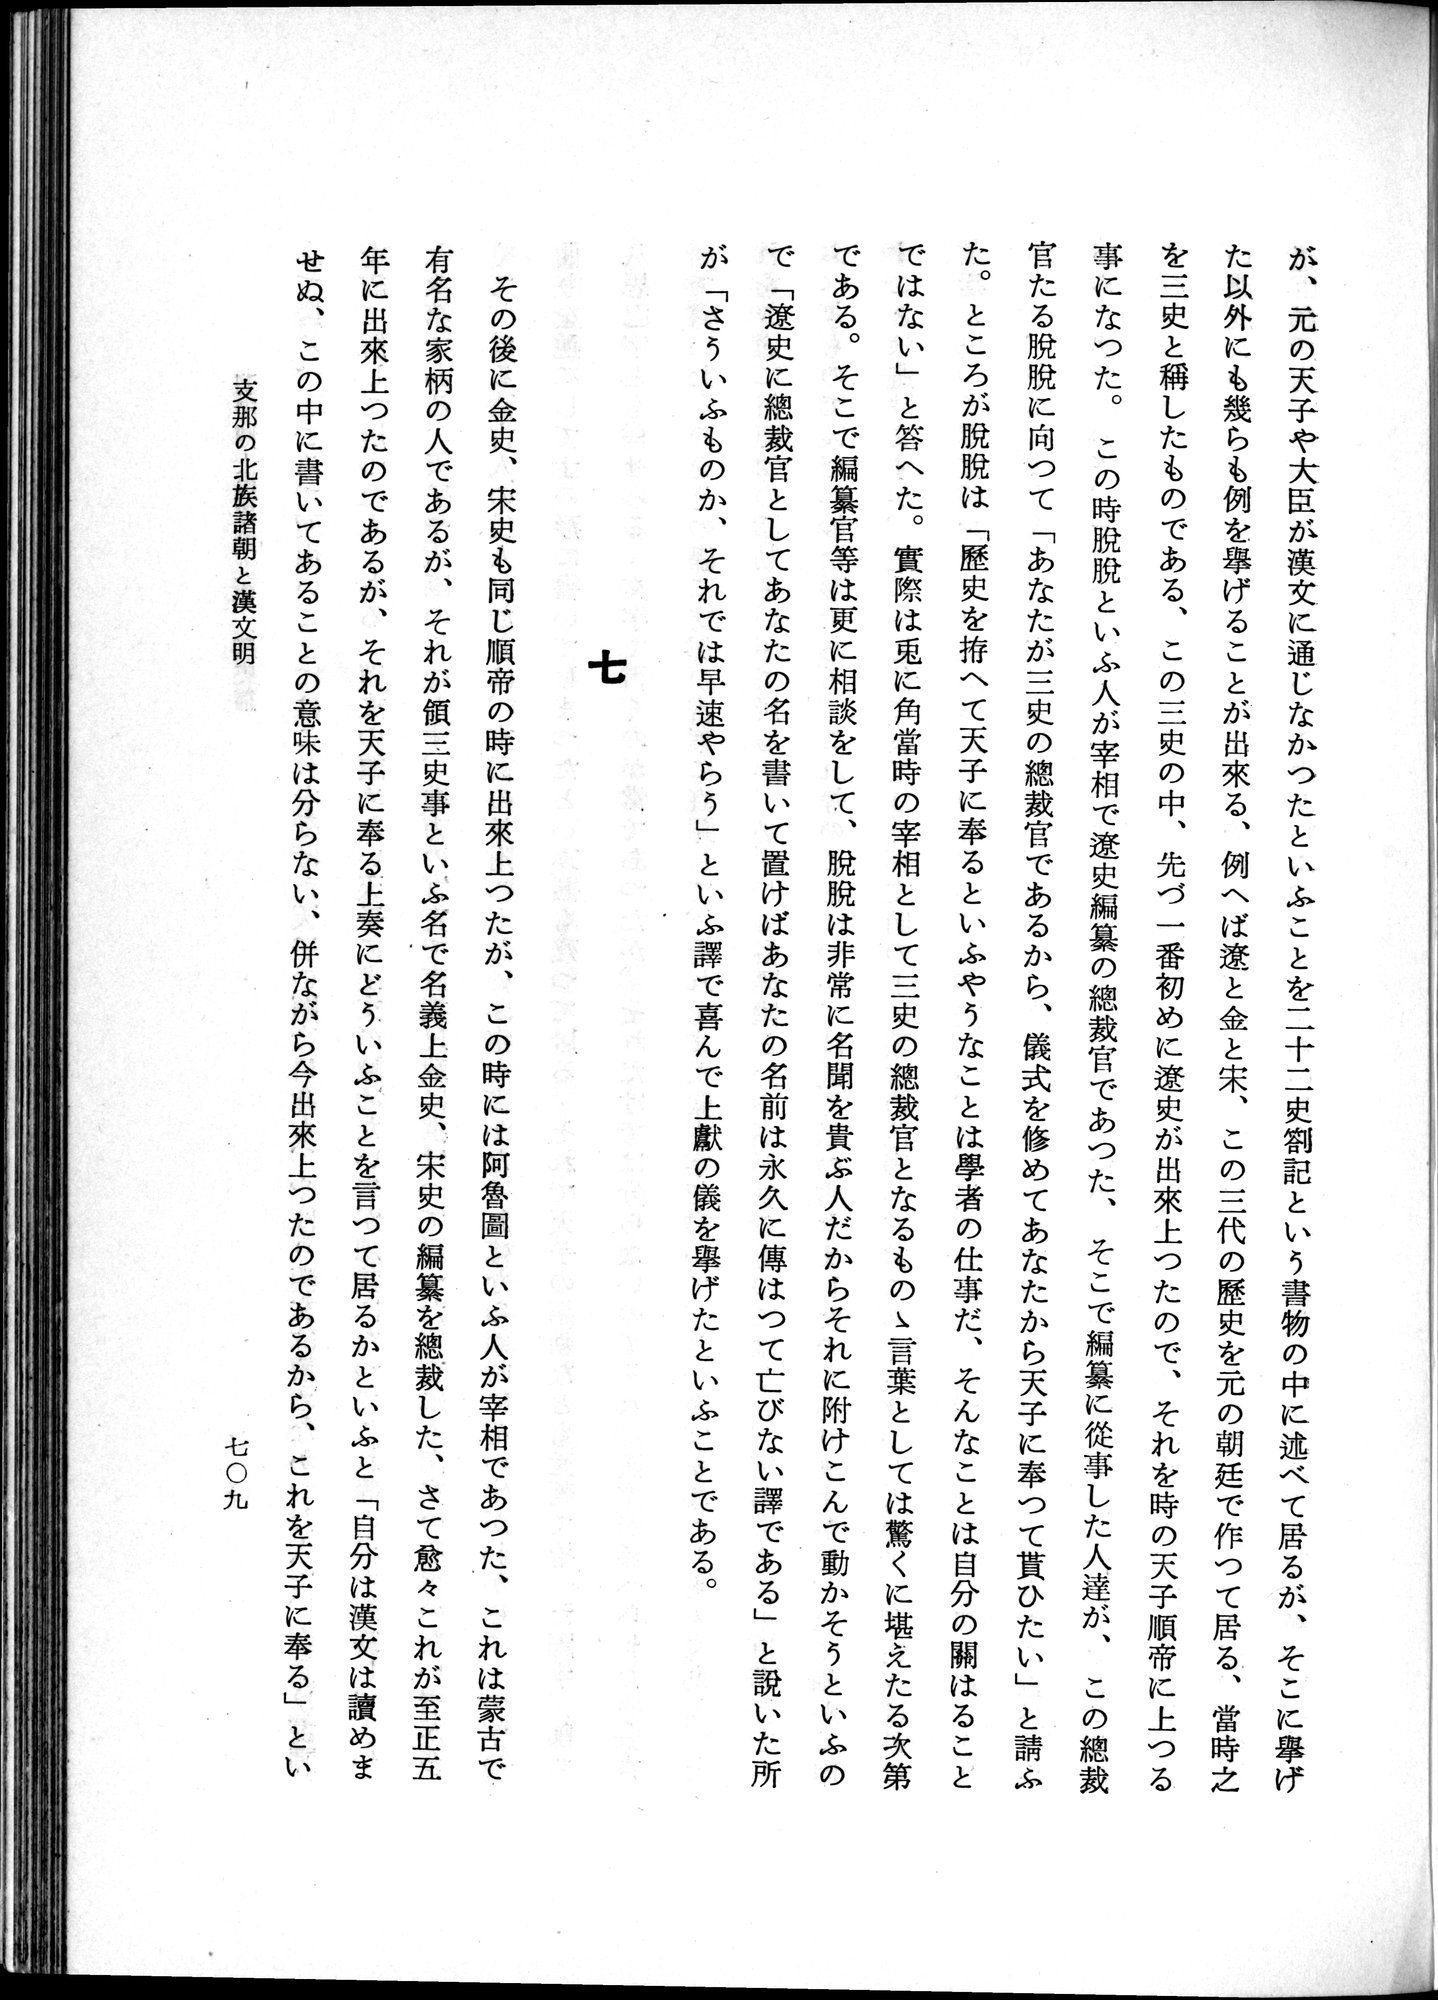 羽田博士史学論文集 : vol.1 / Page 747 (Grayscale High Resolution Image)